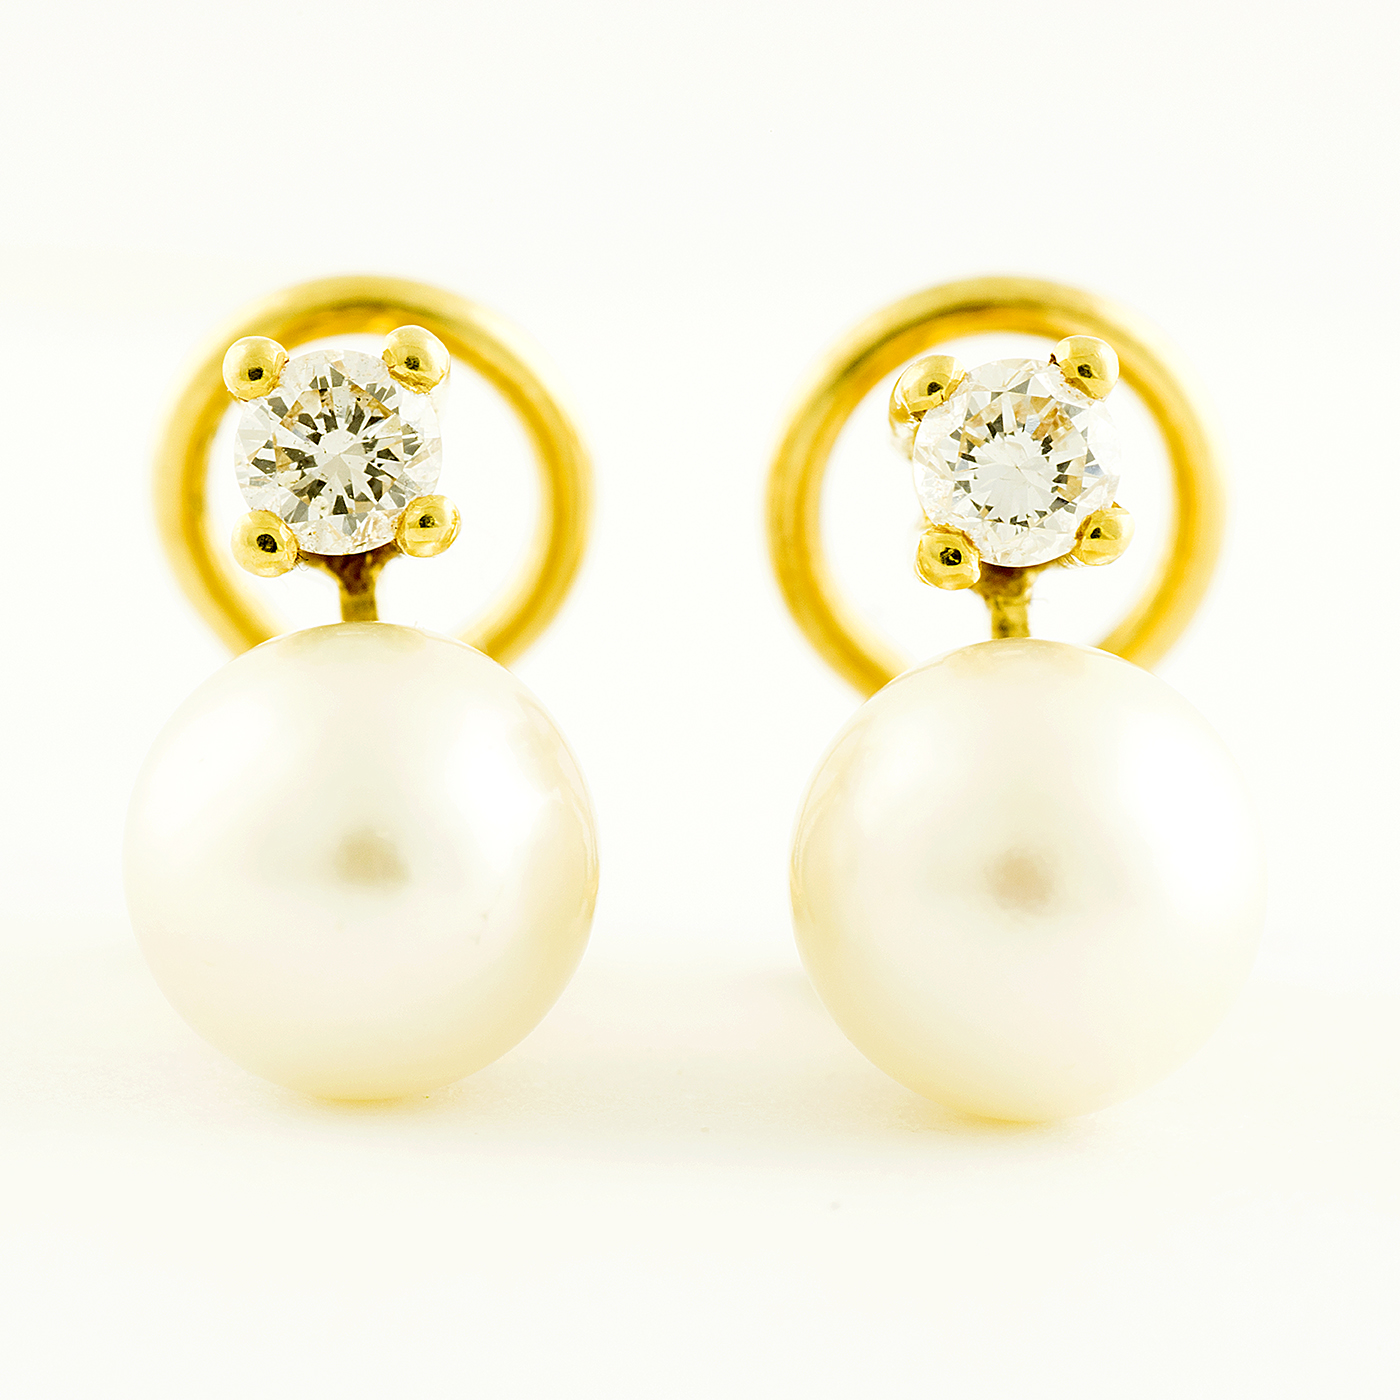 Juego de pendientes de Oro con Perlas y Diamantes Naturales, talla Brillante,de 0,32 ct. (I-J/SI1). Certificado IGE.